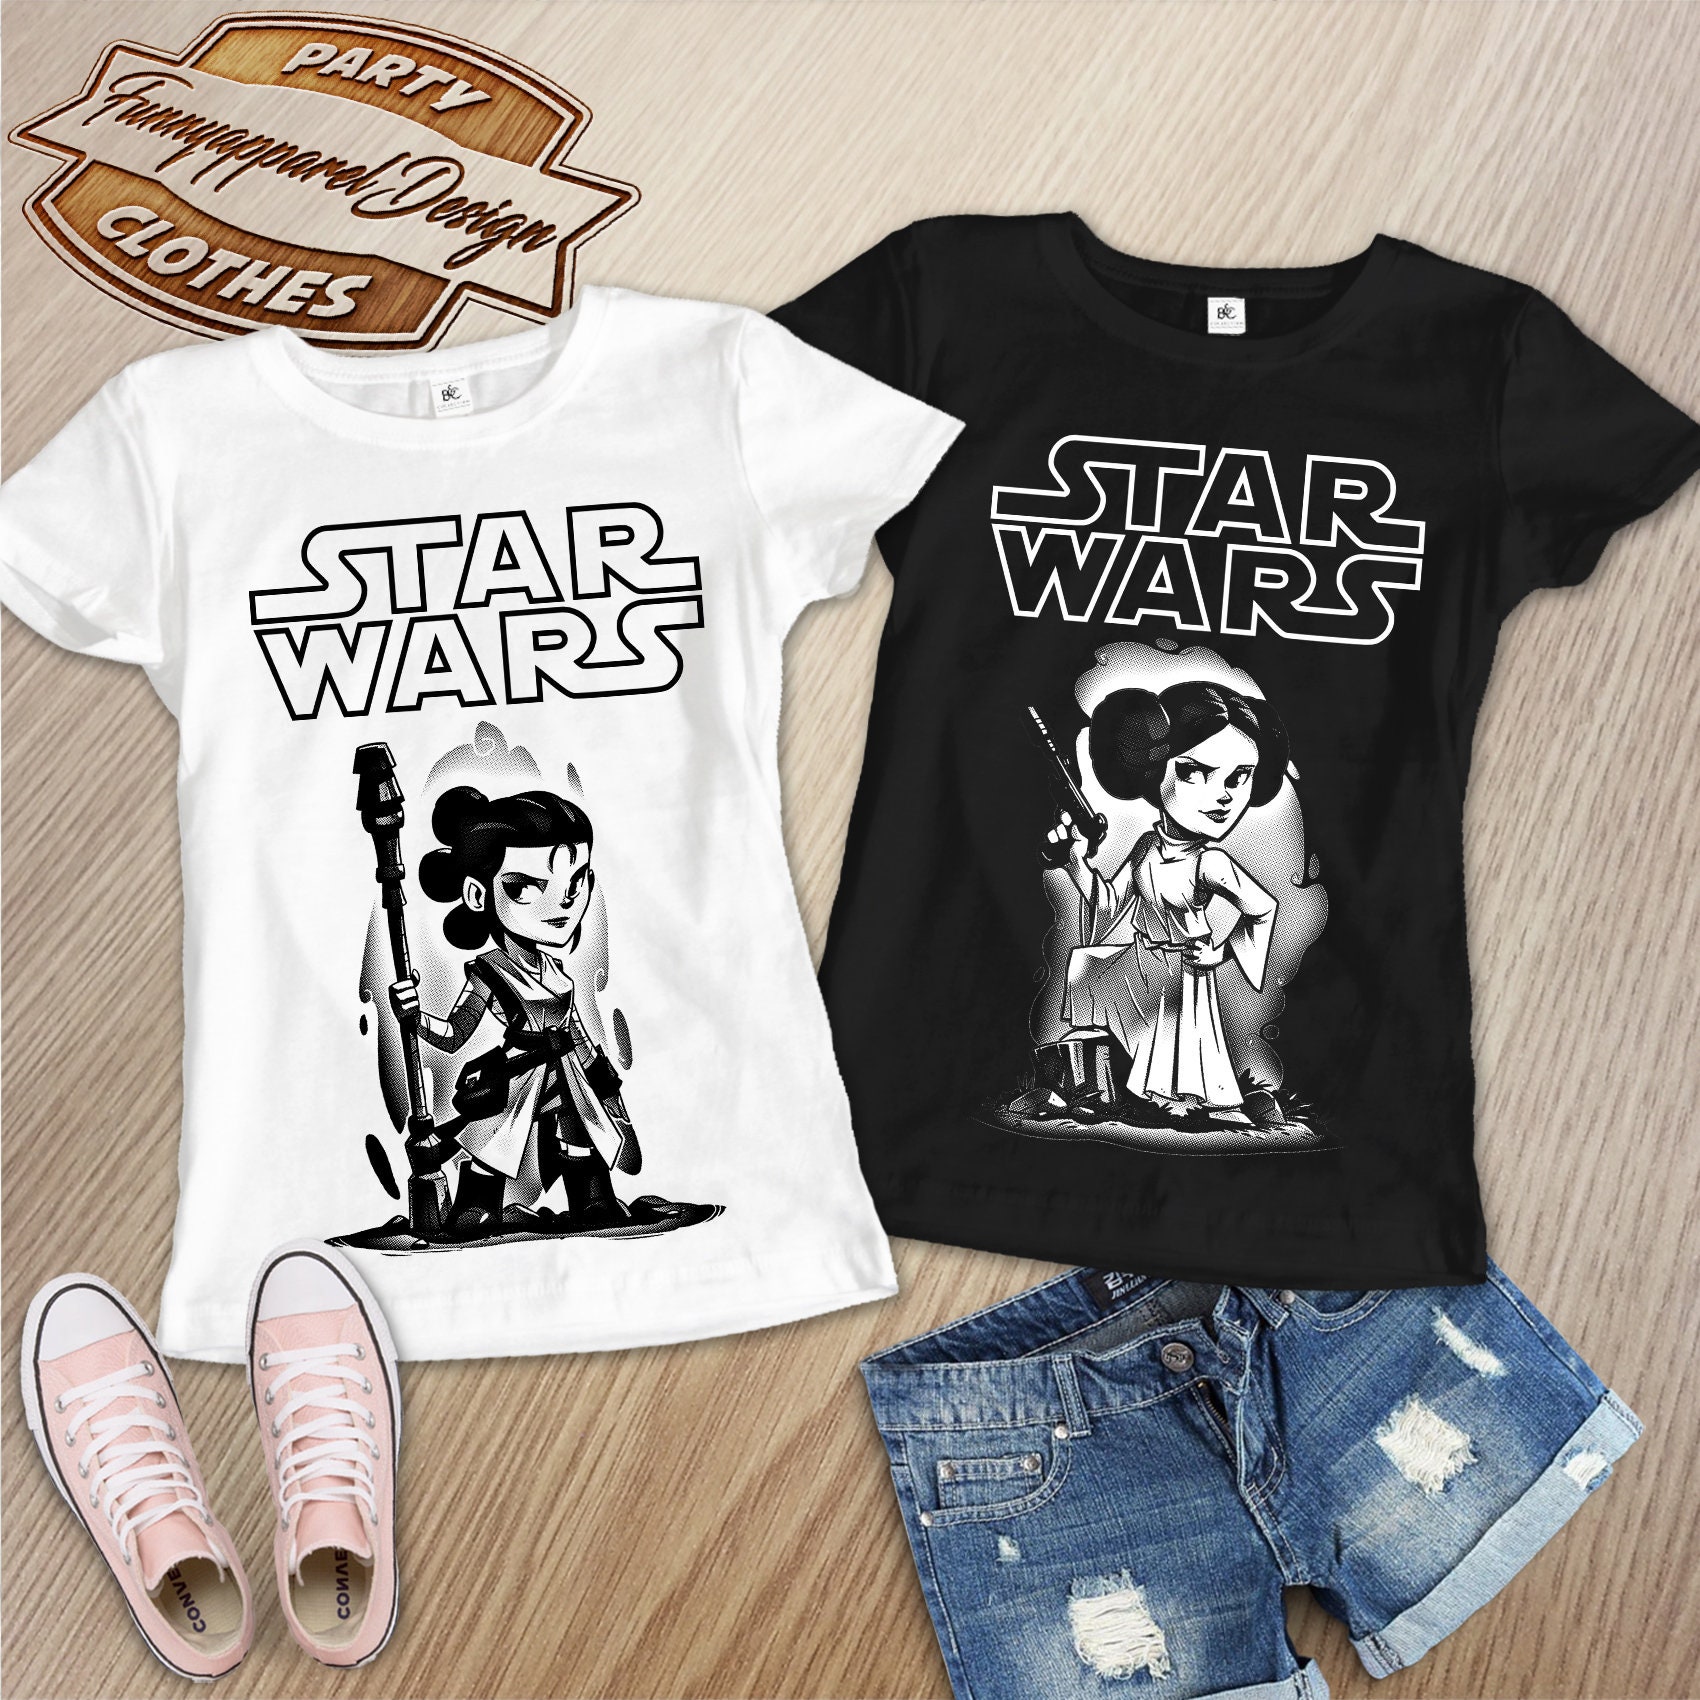 Star Wars Shirts Star Wars Matching Shirt Star Wars Vacation | Etsy